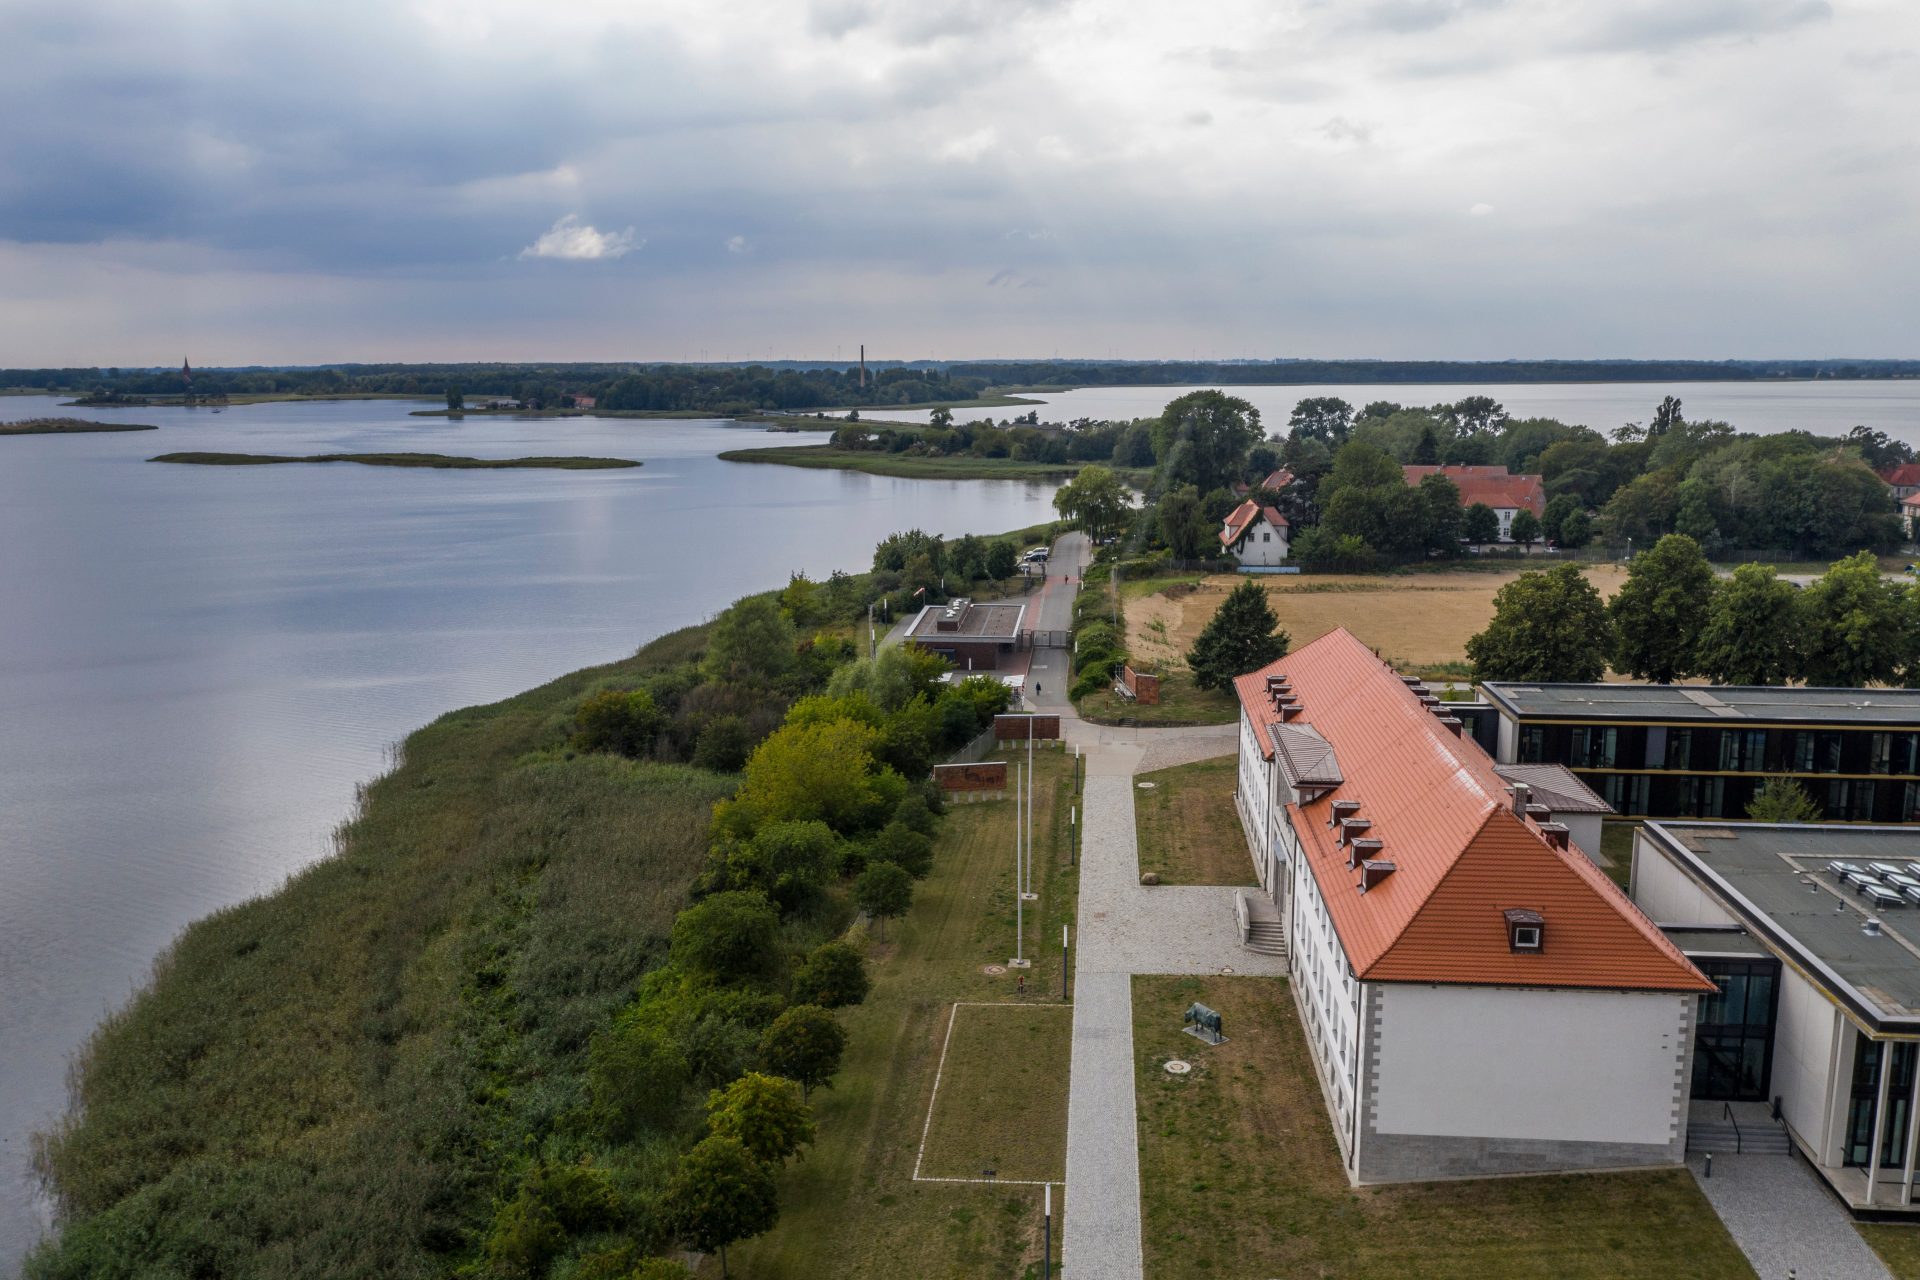 Betreten verboten: warum die Ostsee-Insel Riems so gefährlich ist